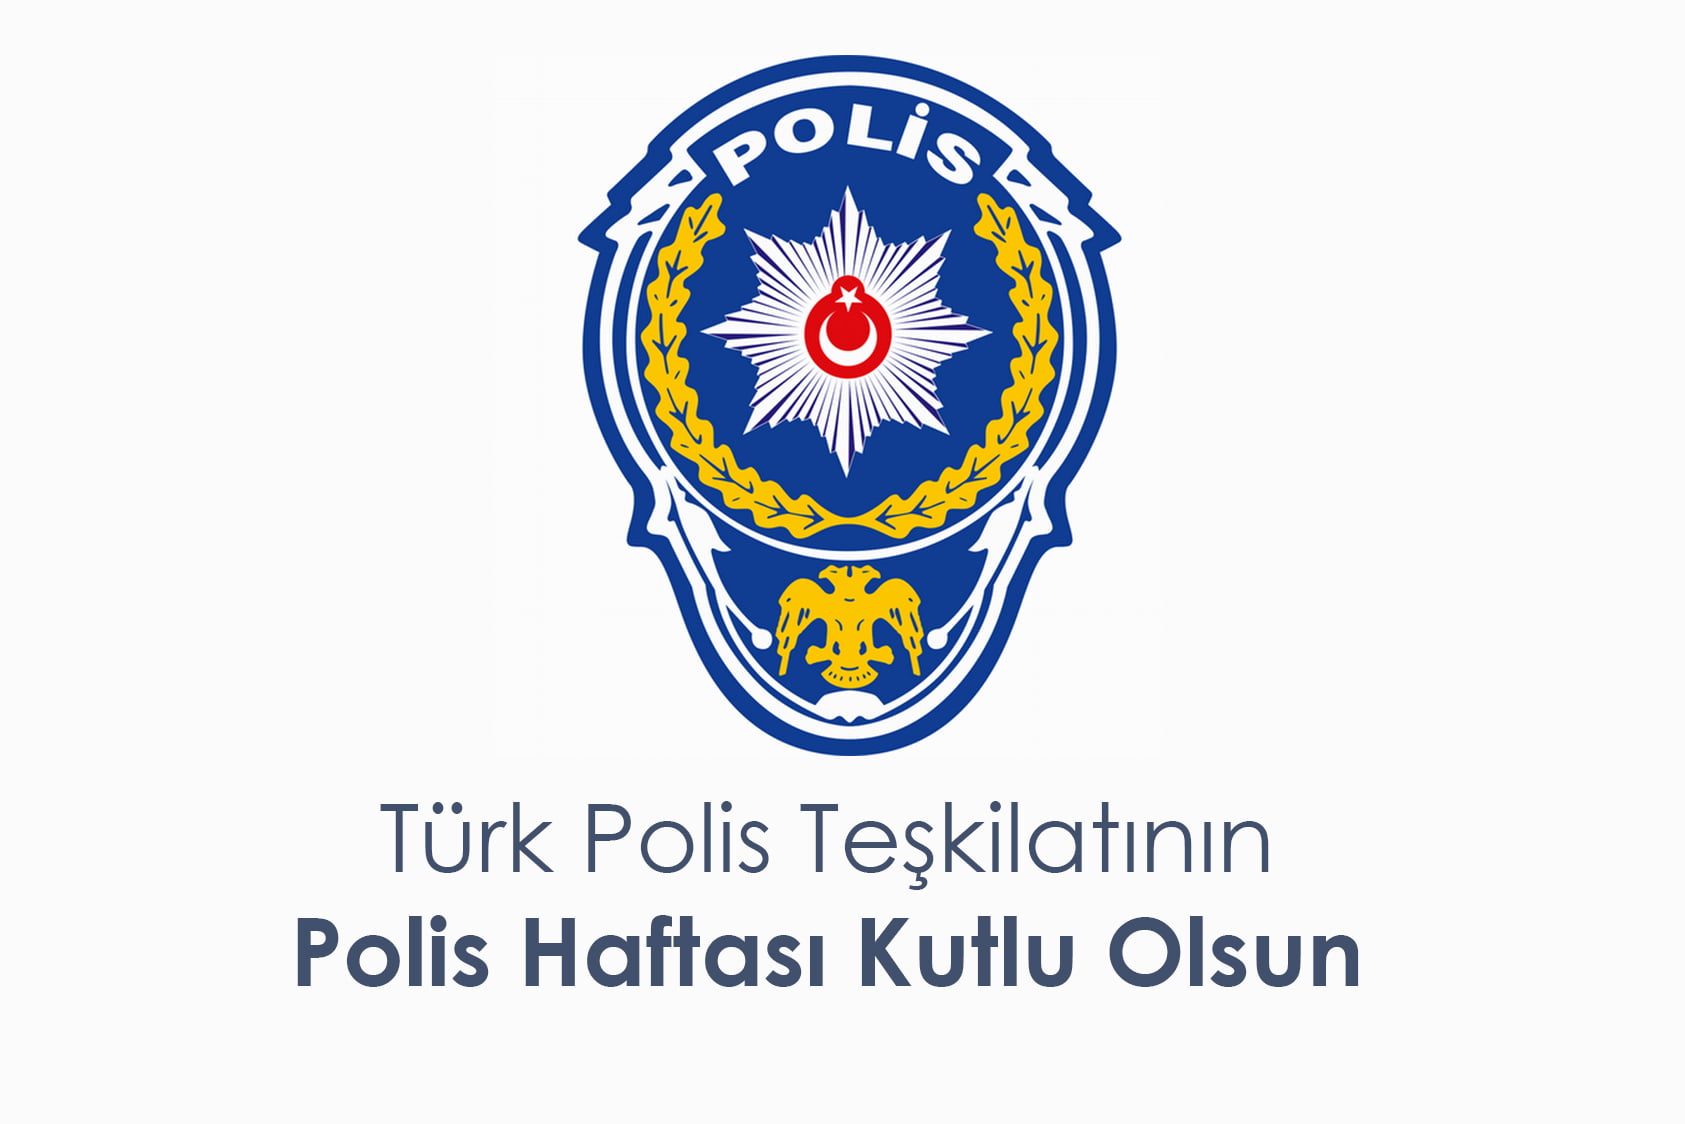 Türk Polis Teşkilatı 176 Yaşında